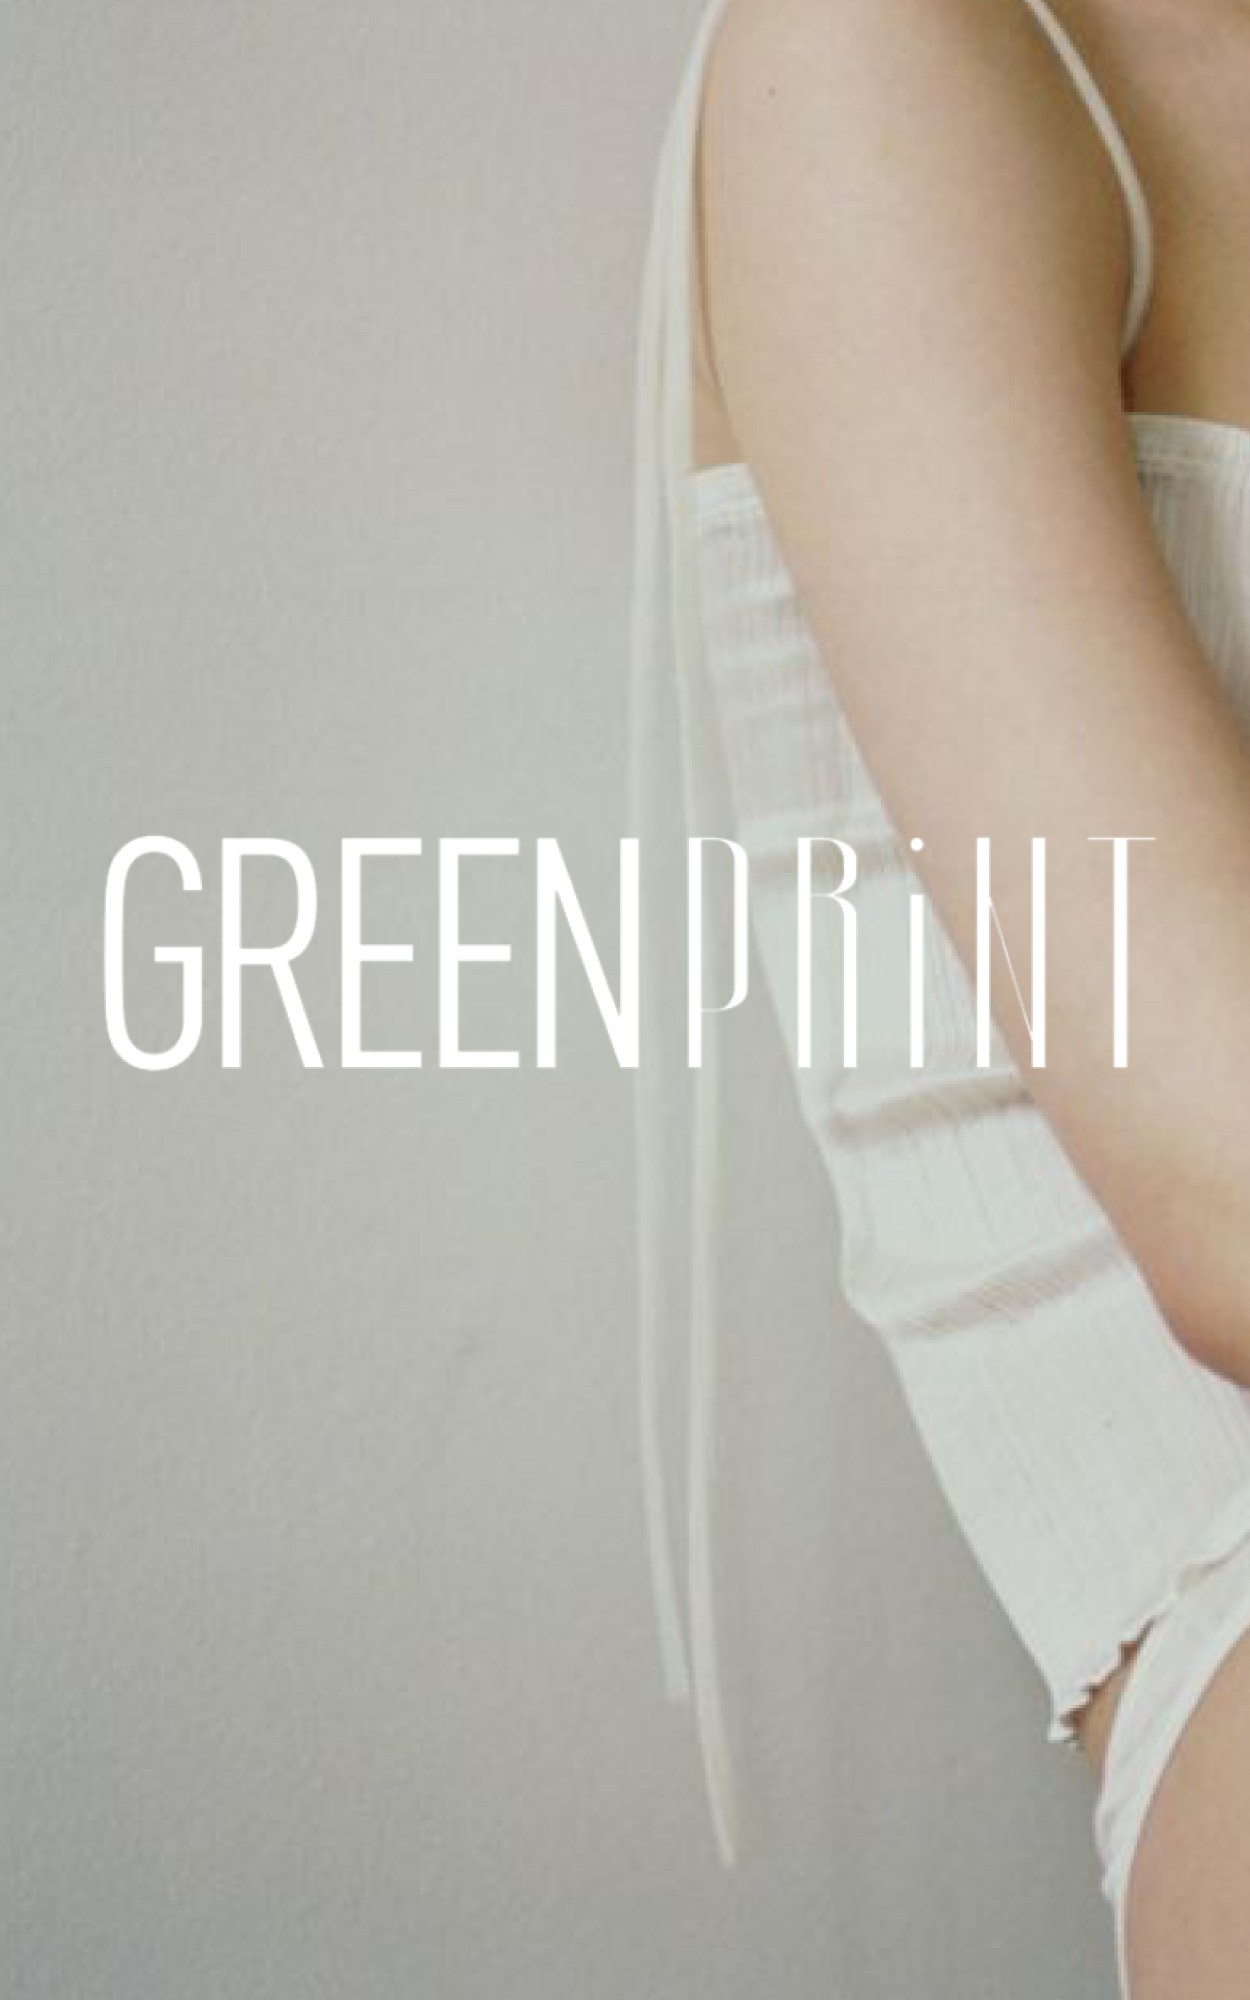 Greenprint 2: Как меняются экология, мода и наши потребительские привычки